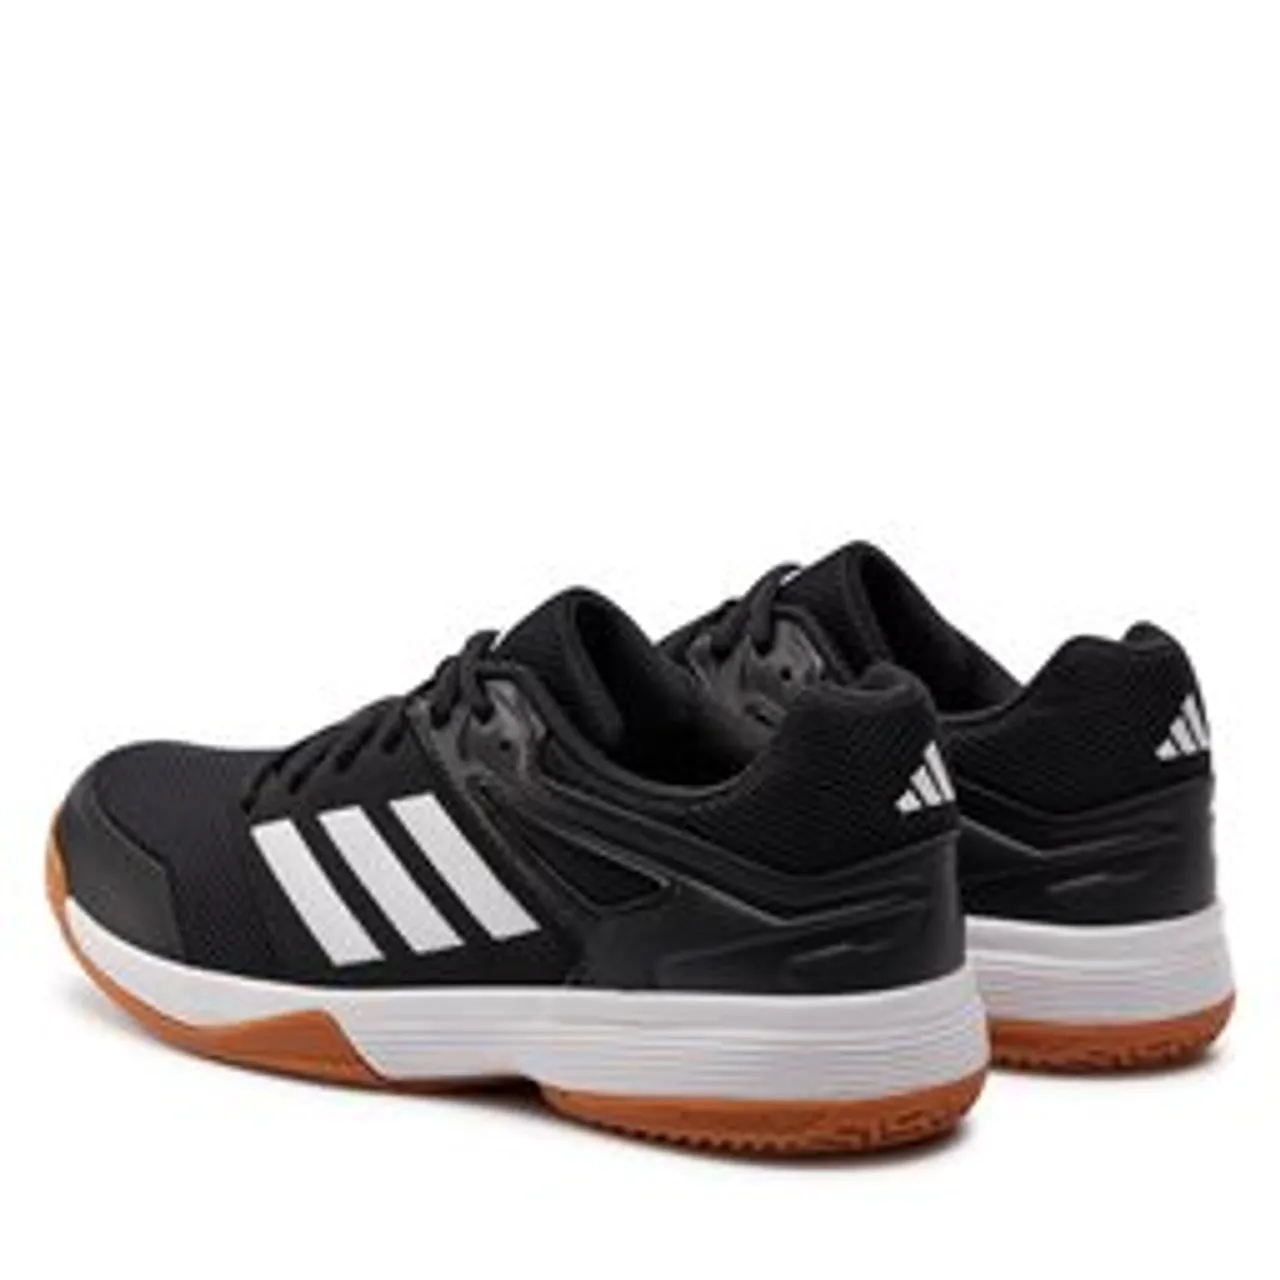 Schuhe adidas Speedcourt Indoor IE8033 Cblack/Ftwwht/Gum10